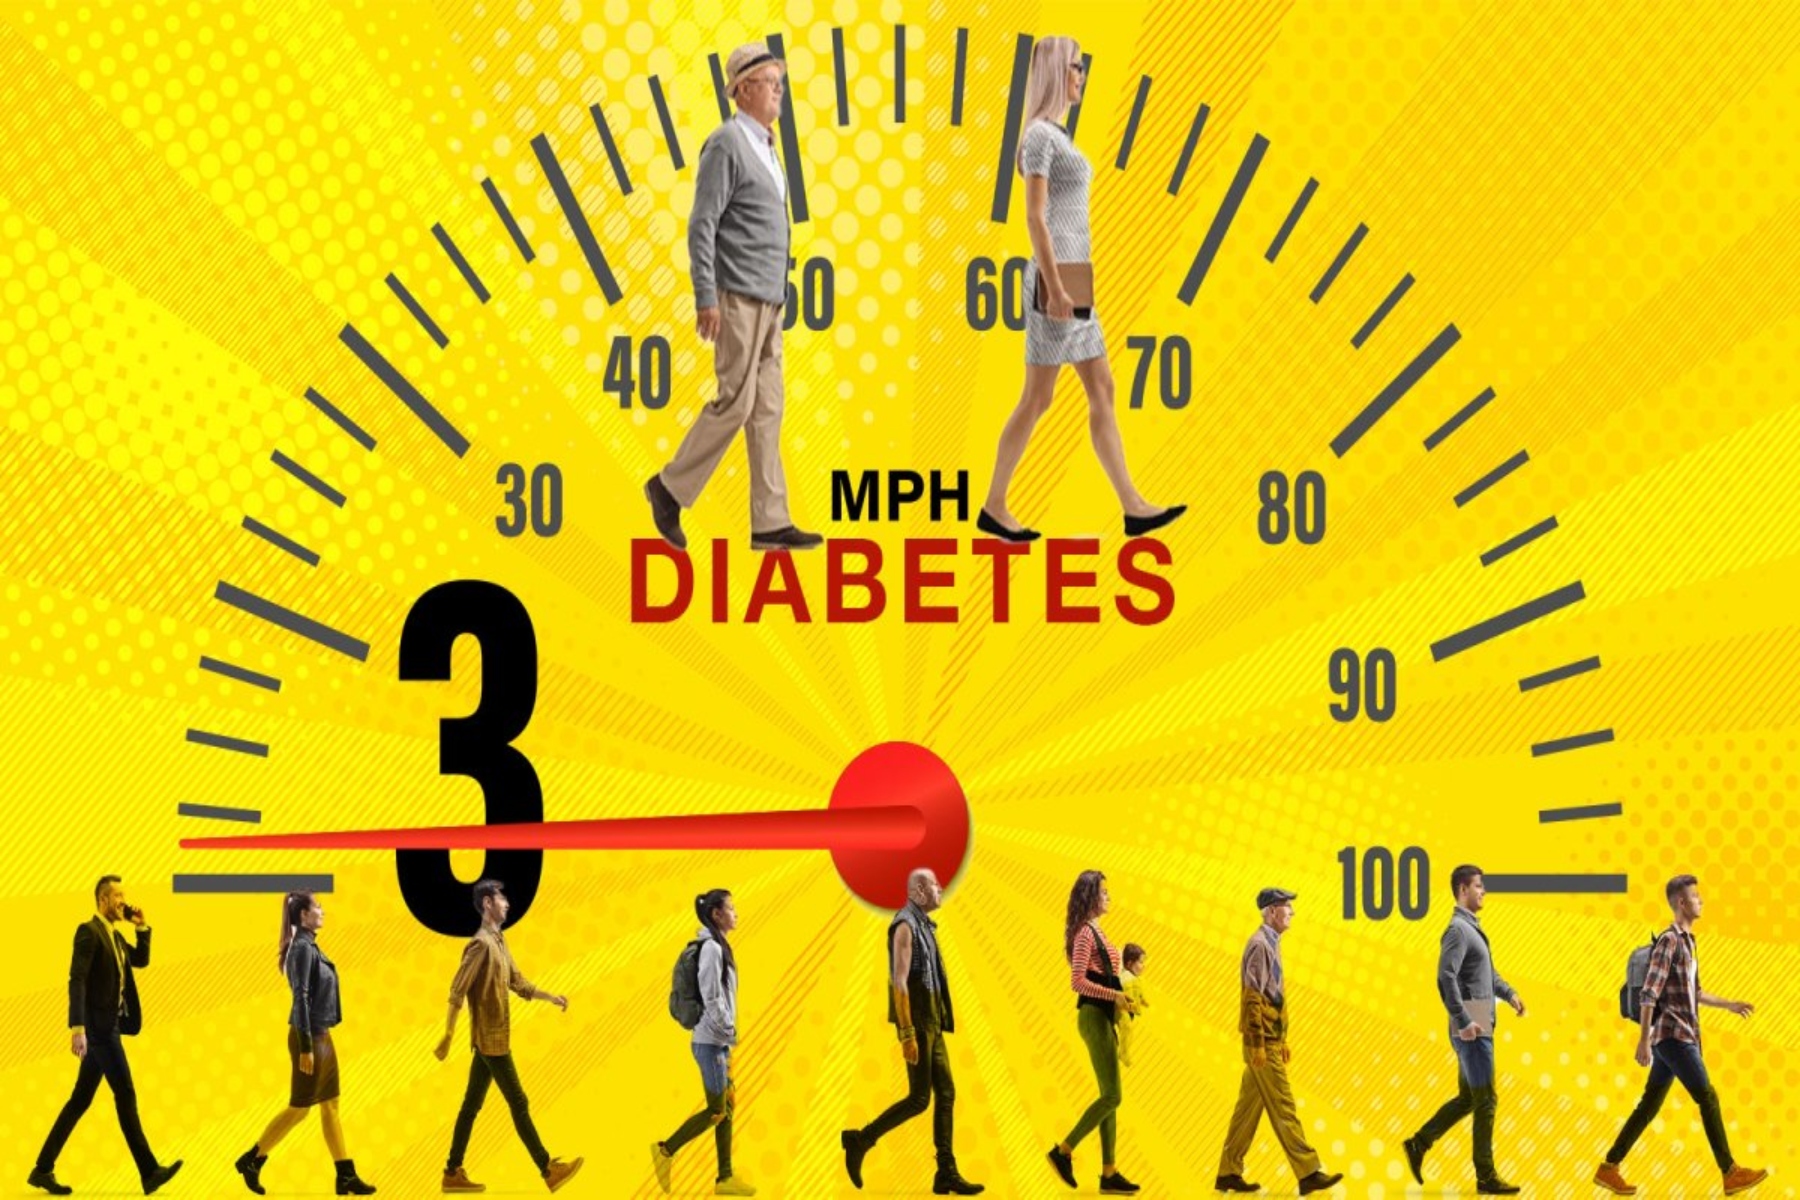 Βάδισμα διαβήτης: Πώς ο ρυθμός βαδίσματος βοηθά στη μείωση του κινδύνου του διαβήτη;